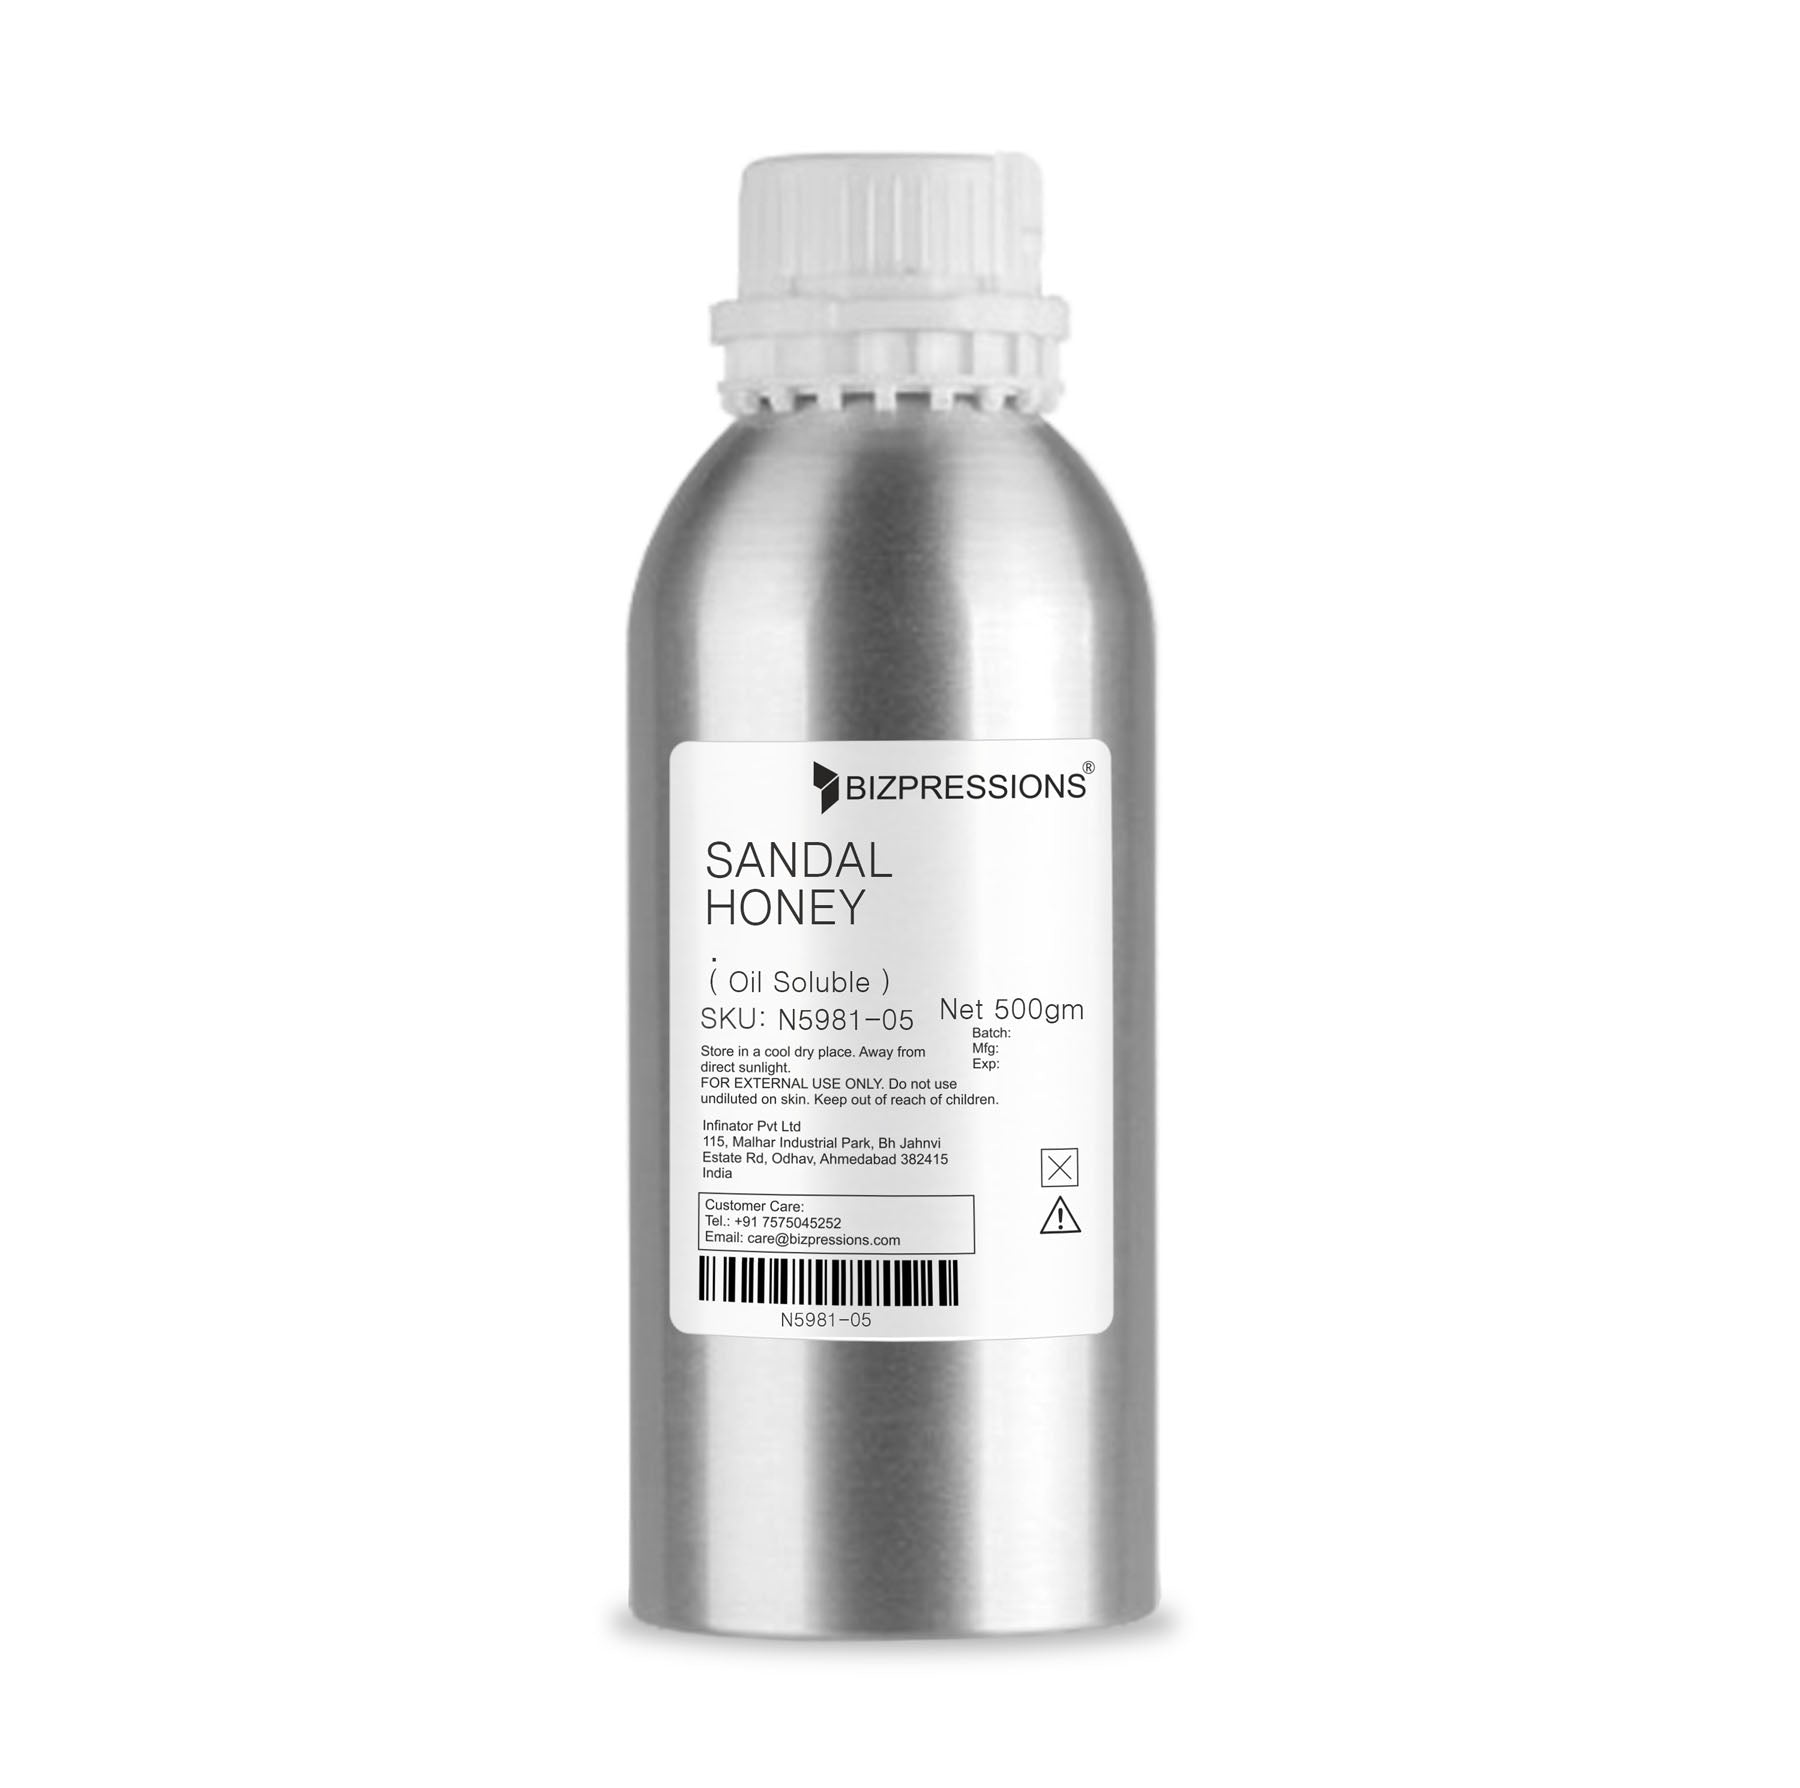 SANDAL HONEY - Fragrance ( Oil Soluble ) - 500 gm